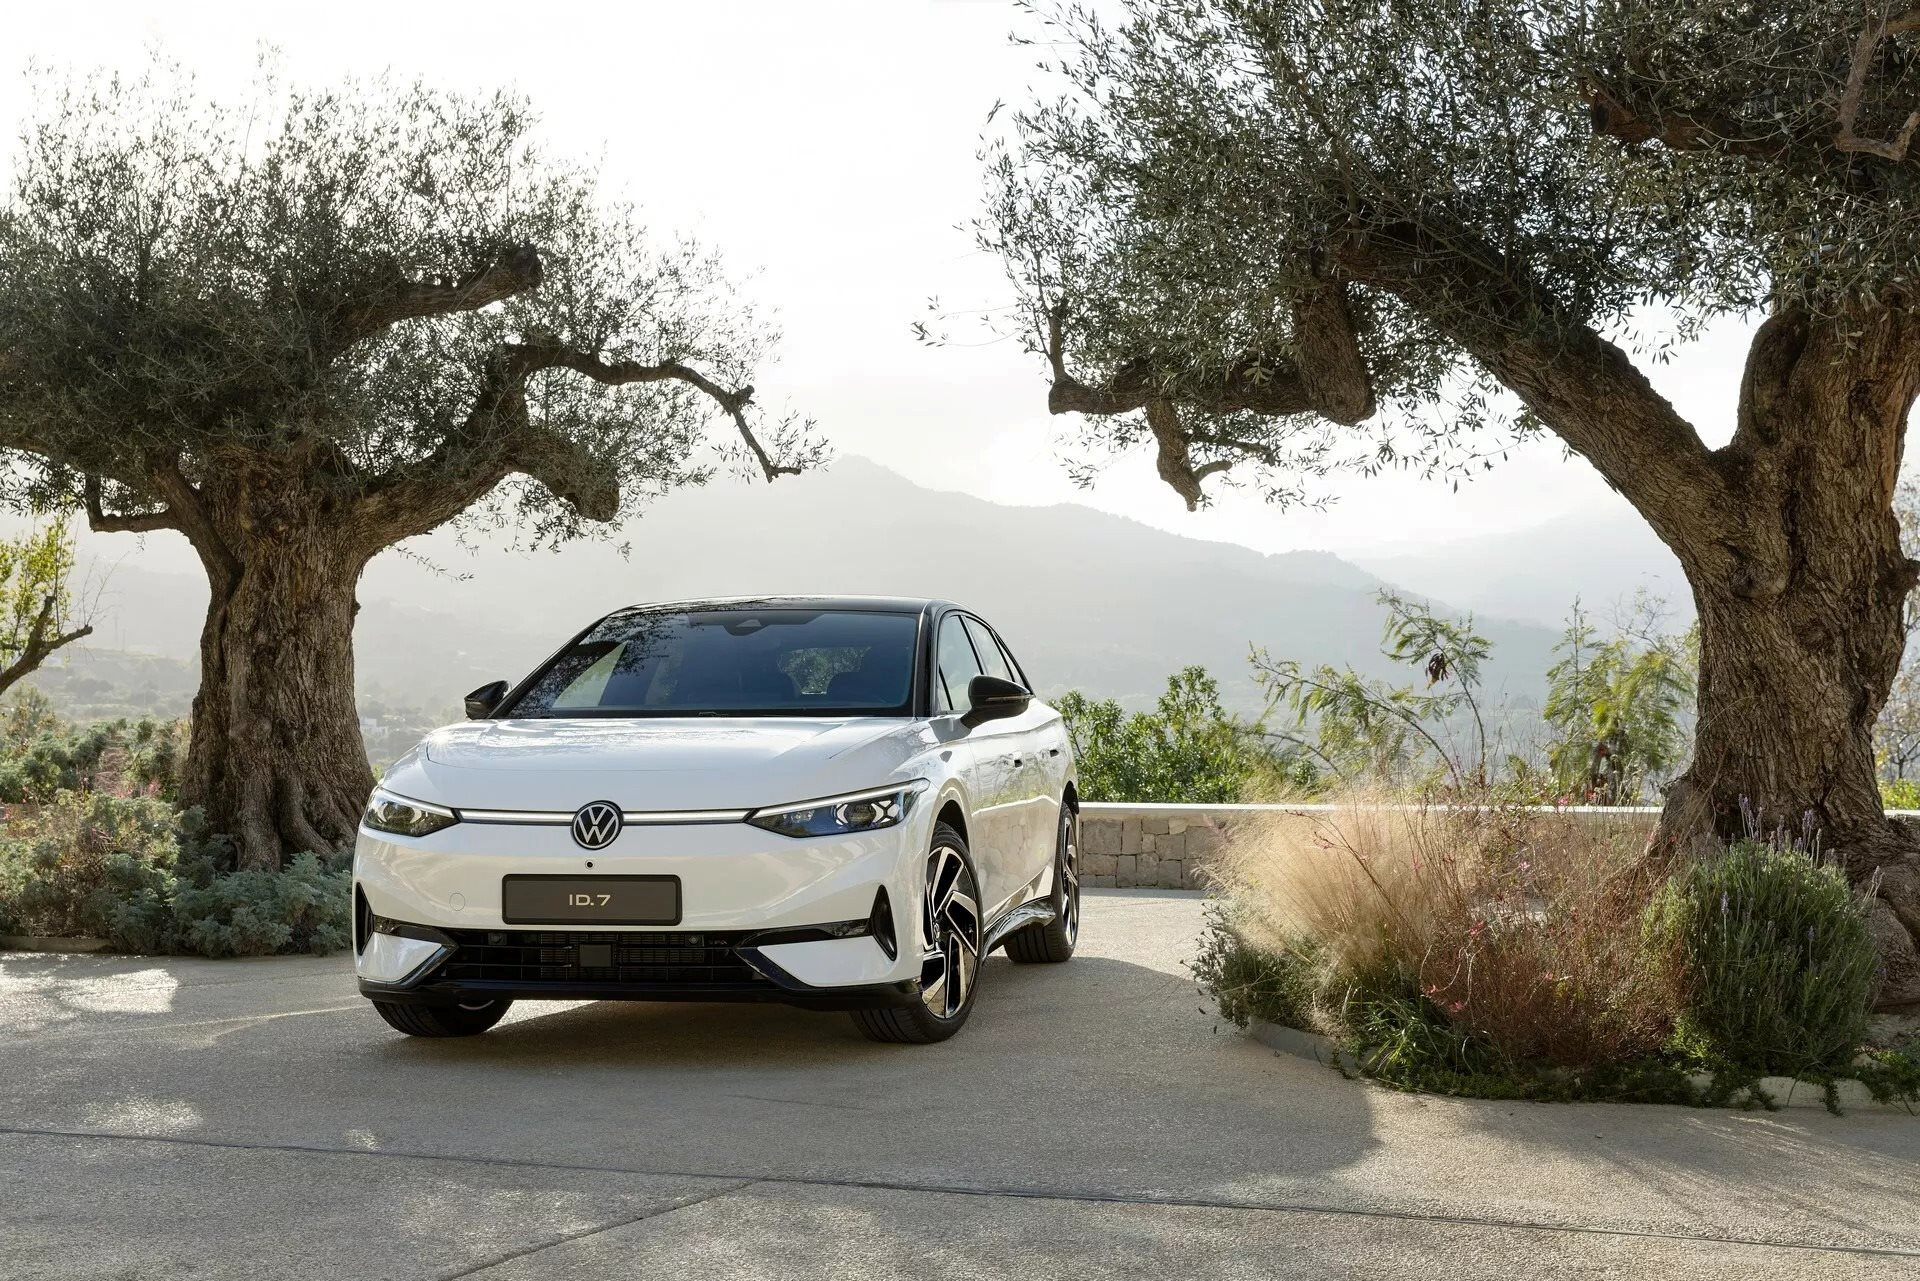 Nếu có ý định mua một chiếc ô tô điện trong 2 năm tới, bạn sẽ hối tiếc nếu bỏ qua mẫu Volkswagen đẹp ‘không tì vết’, tầm hoạt động lên đến 700 km này - Ảnh 2.